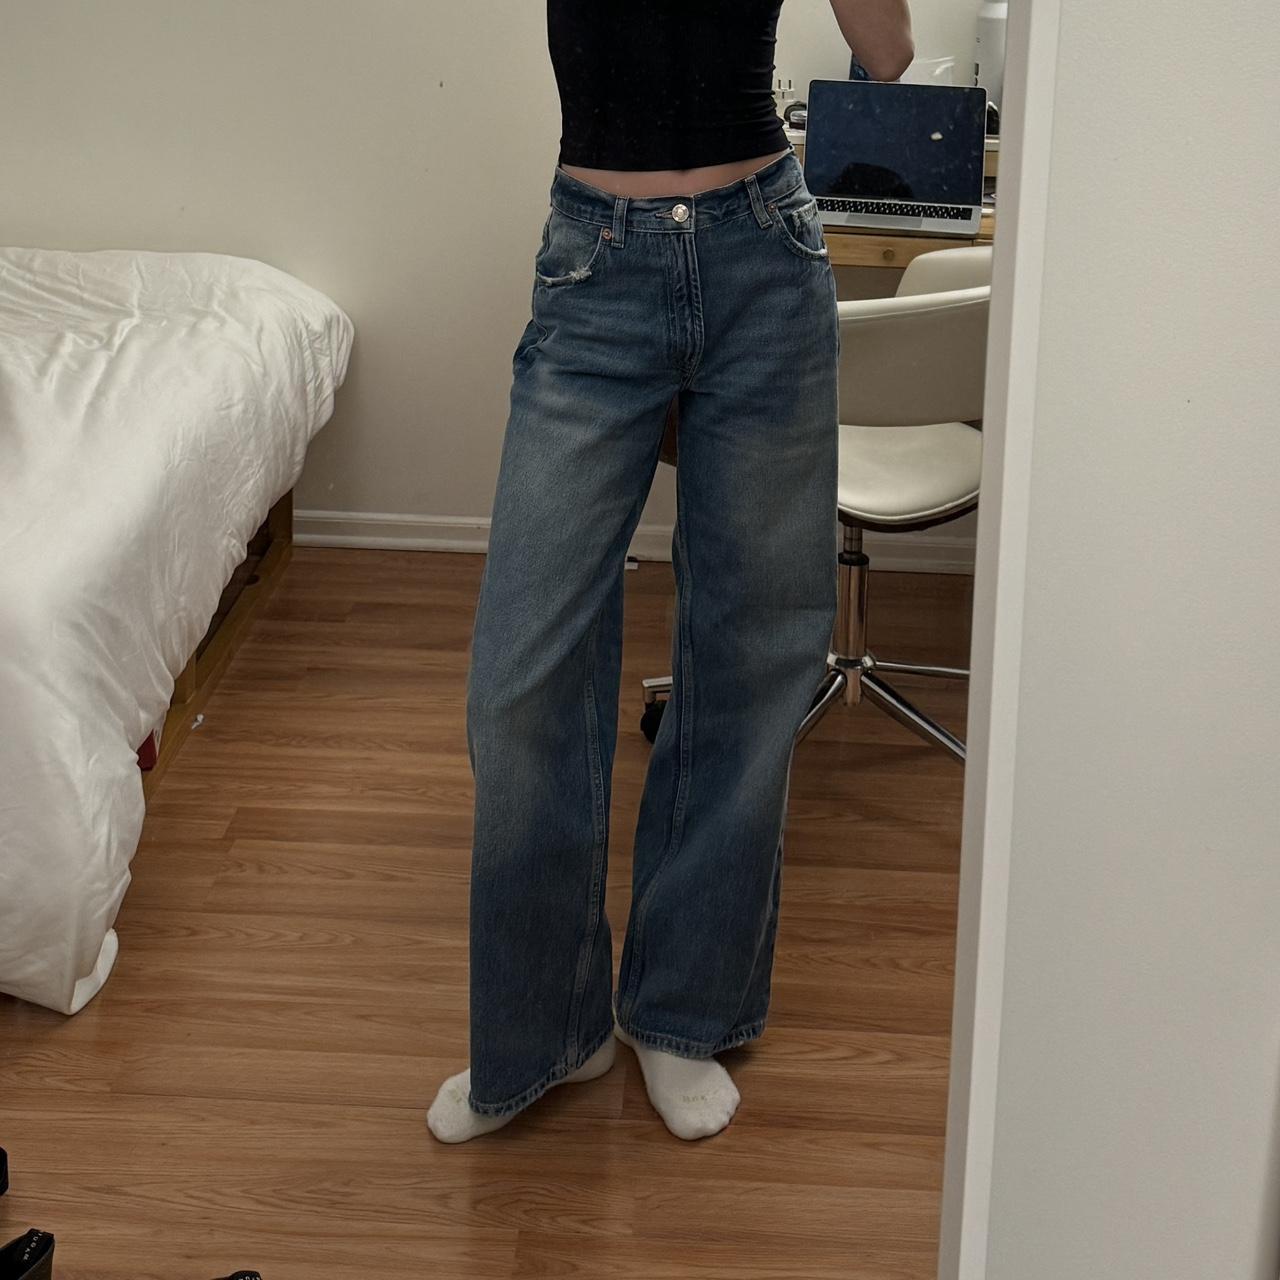 Zara jeans TRF mid rise boyfriend jeans Size 0... - Depop